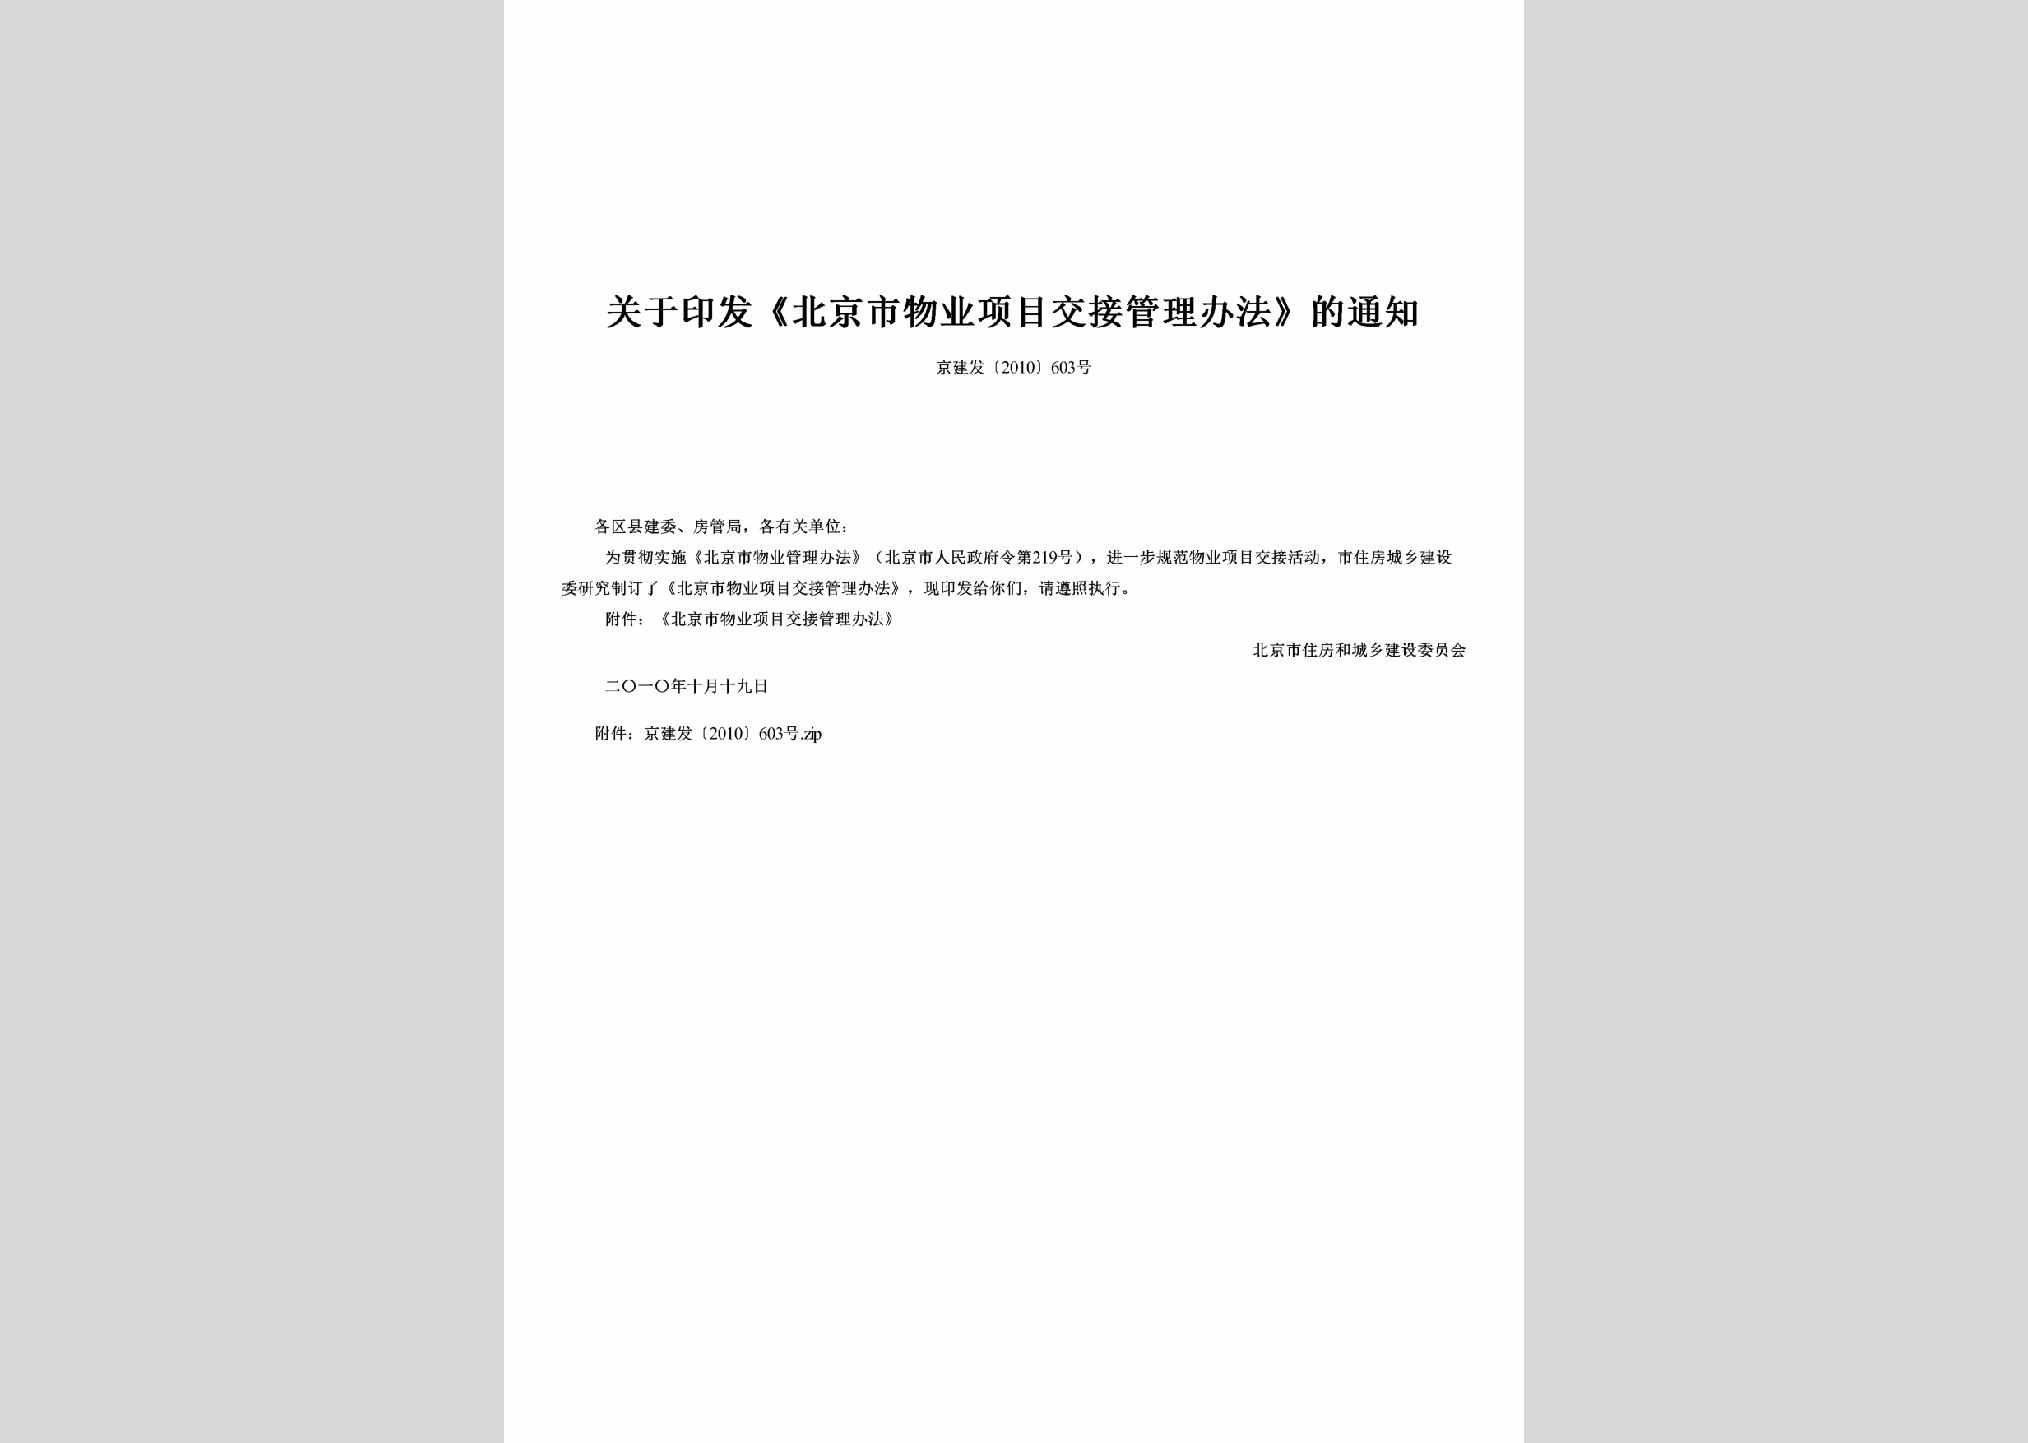 京建发[2010]603号：关于印发《北京市物业项目交接管理办法》的通知